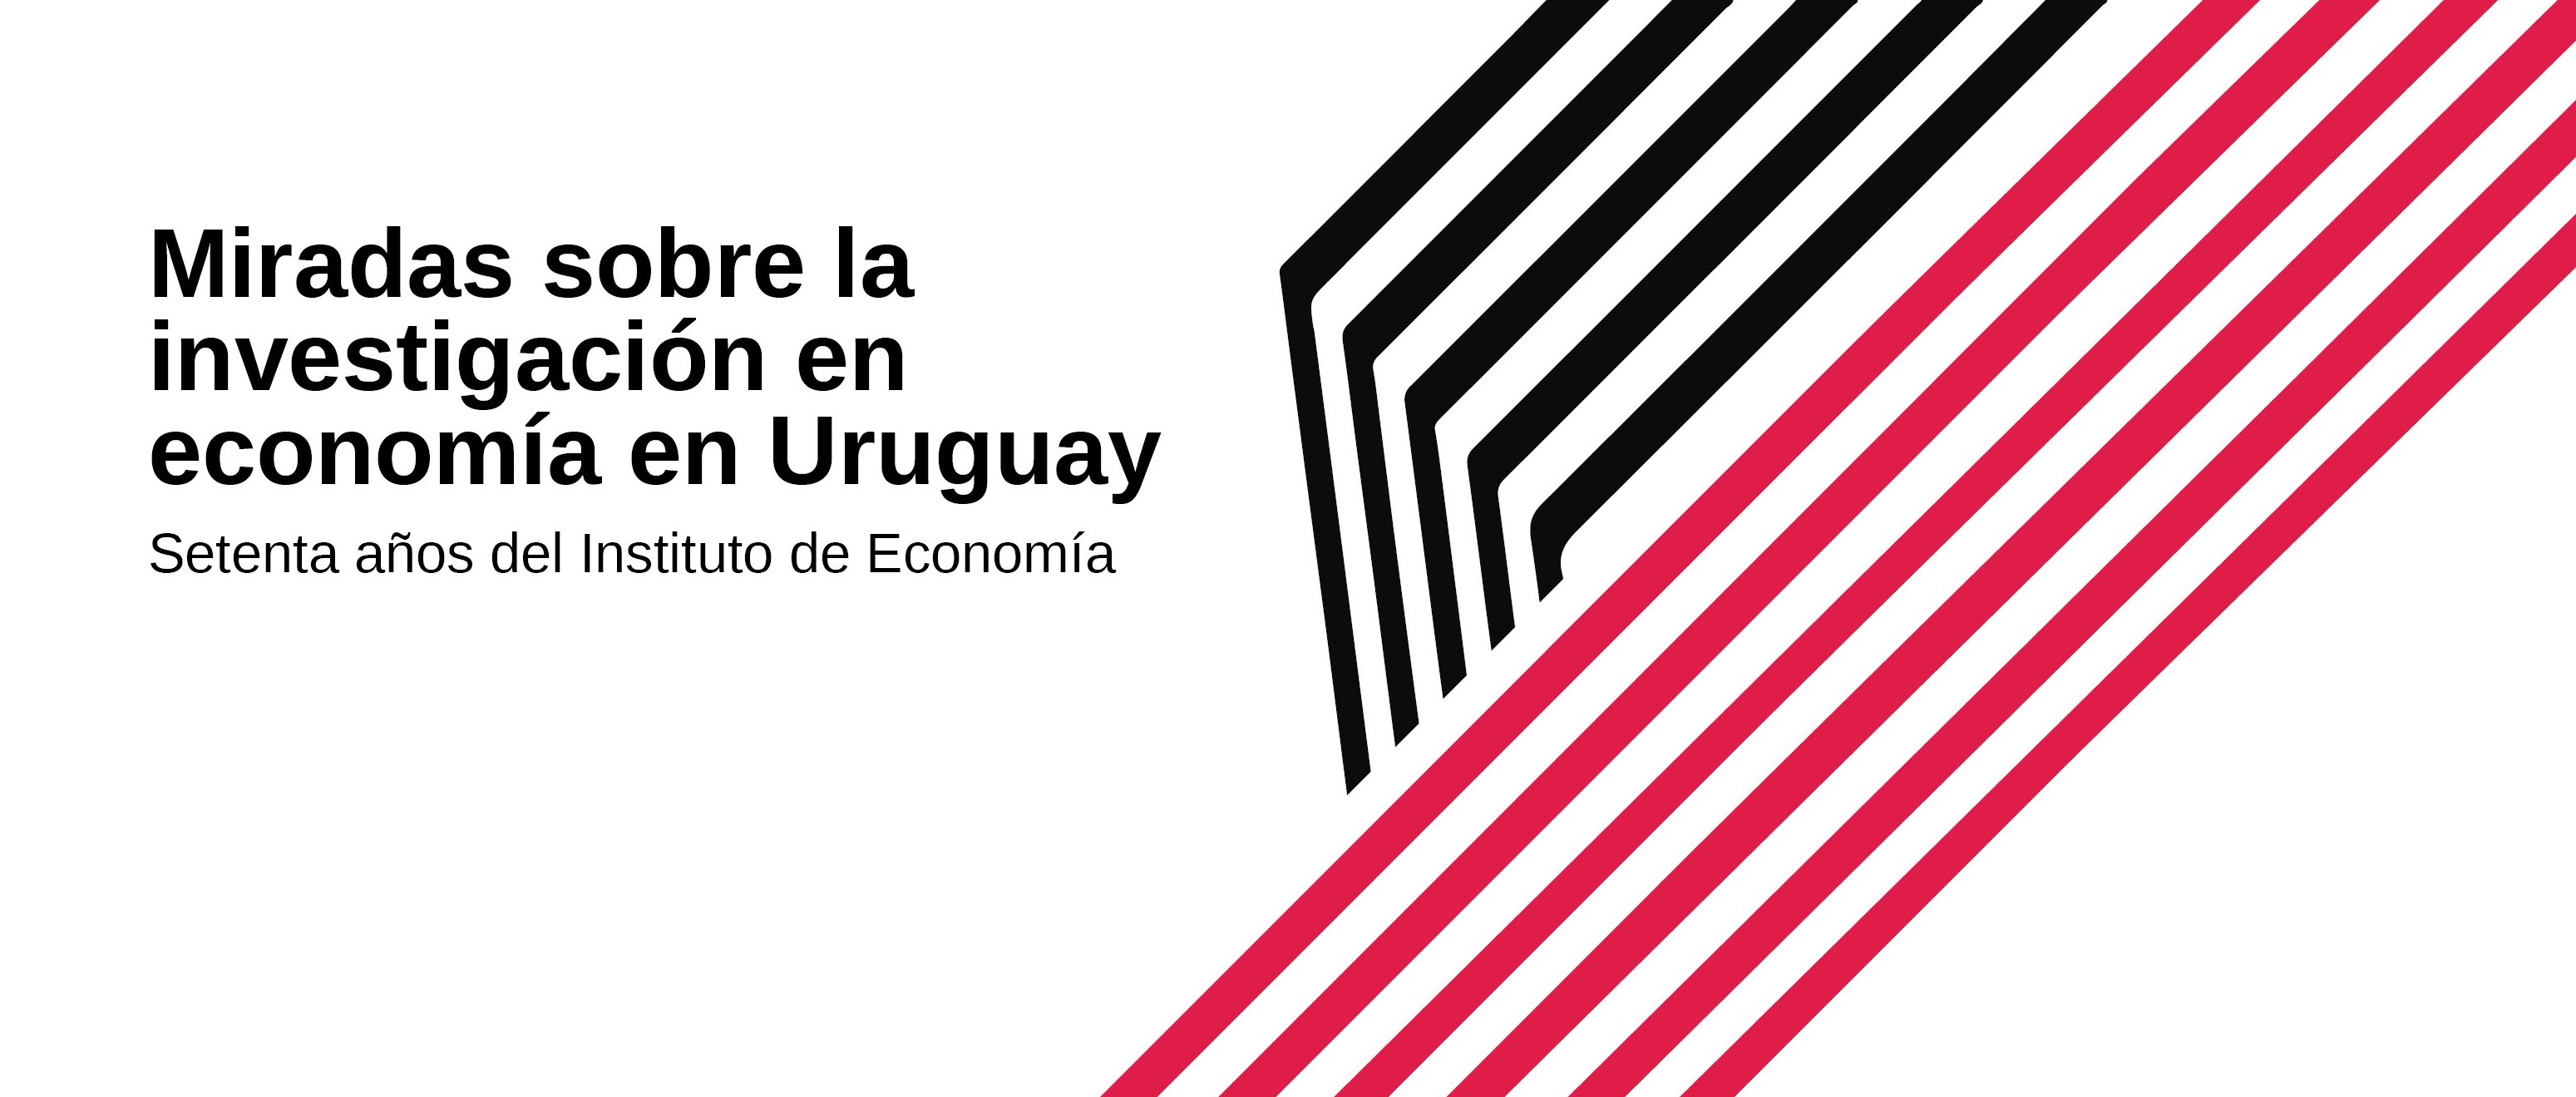 Miradas sobre la investigación en economía en Uruguay: Setenta años del Instituto de Economía